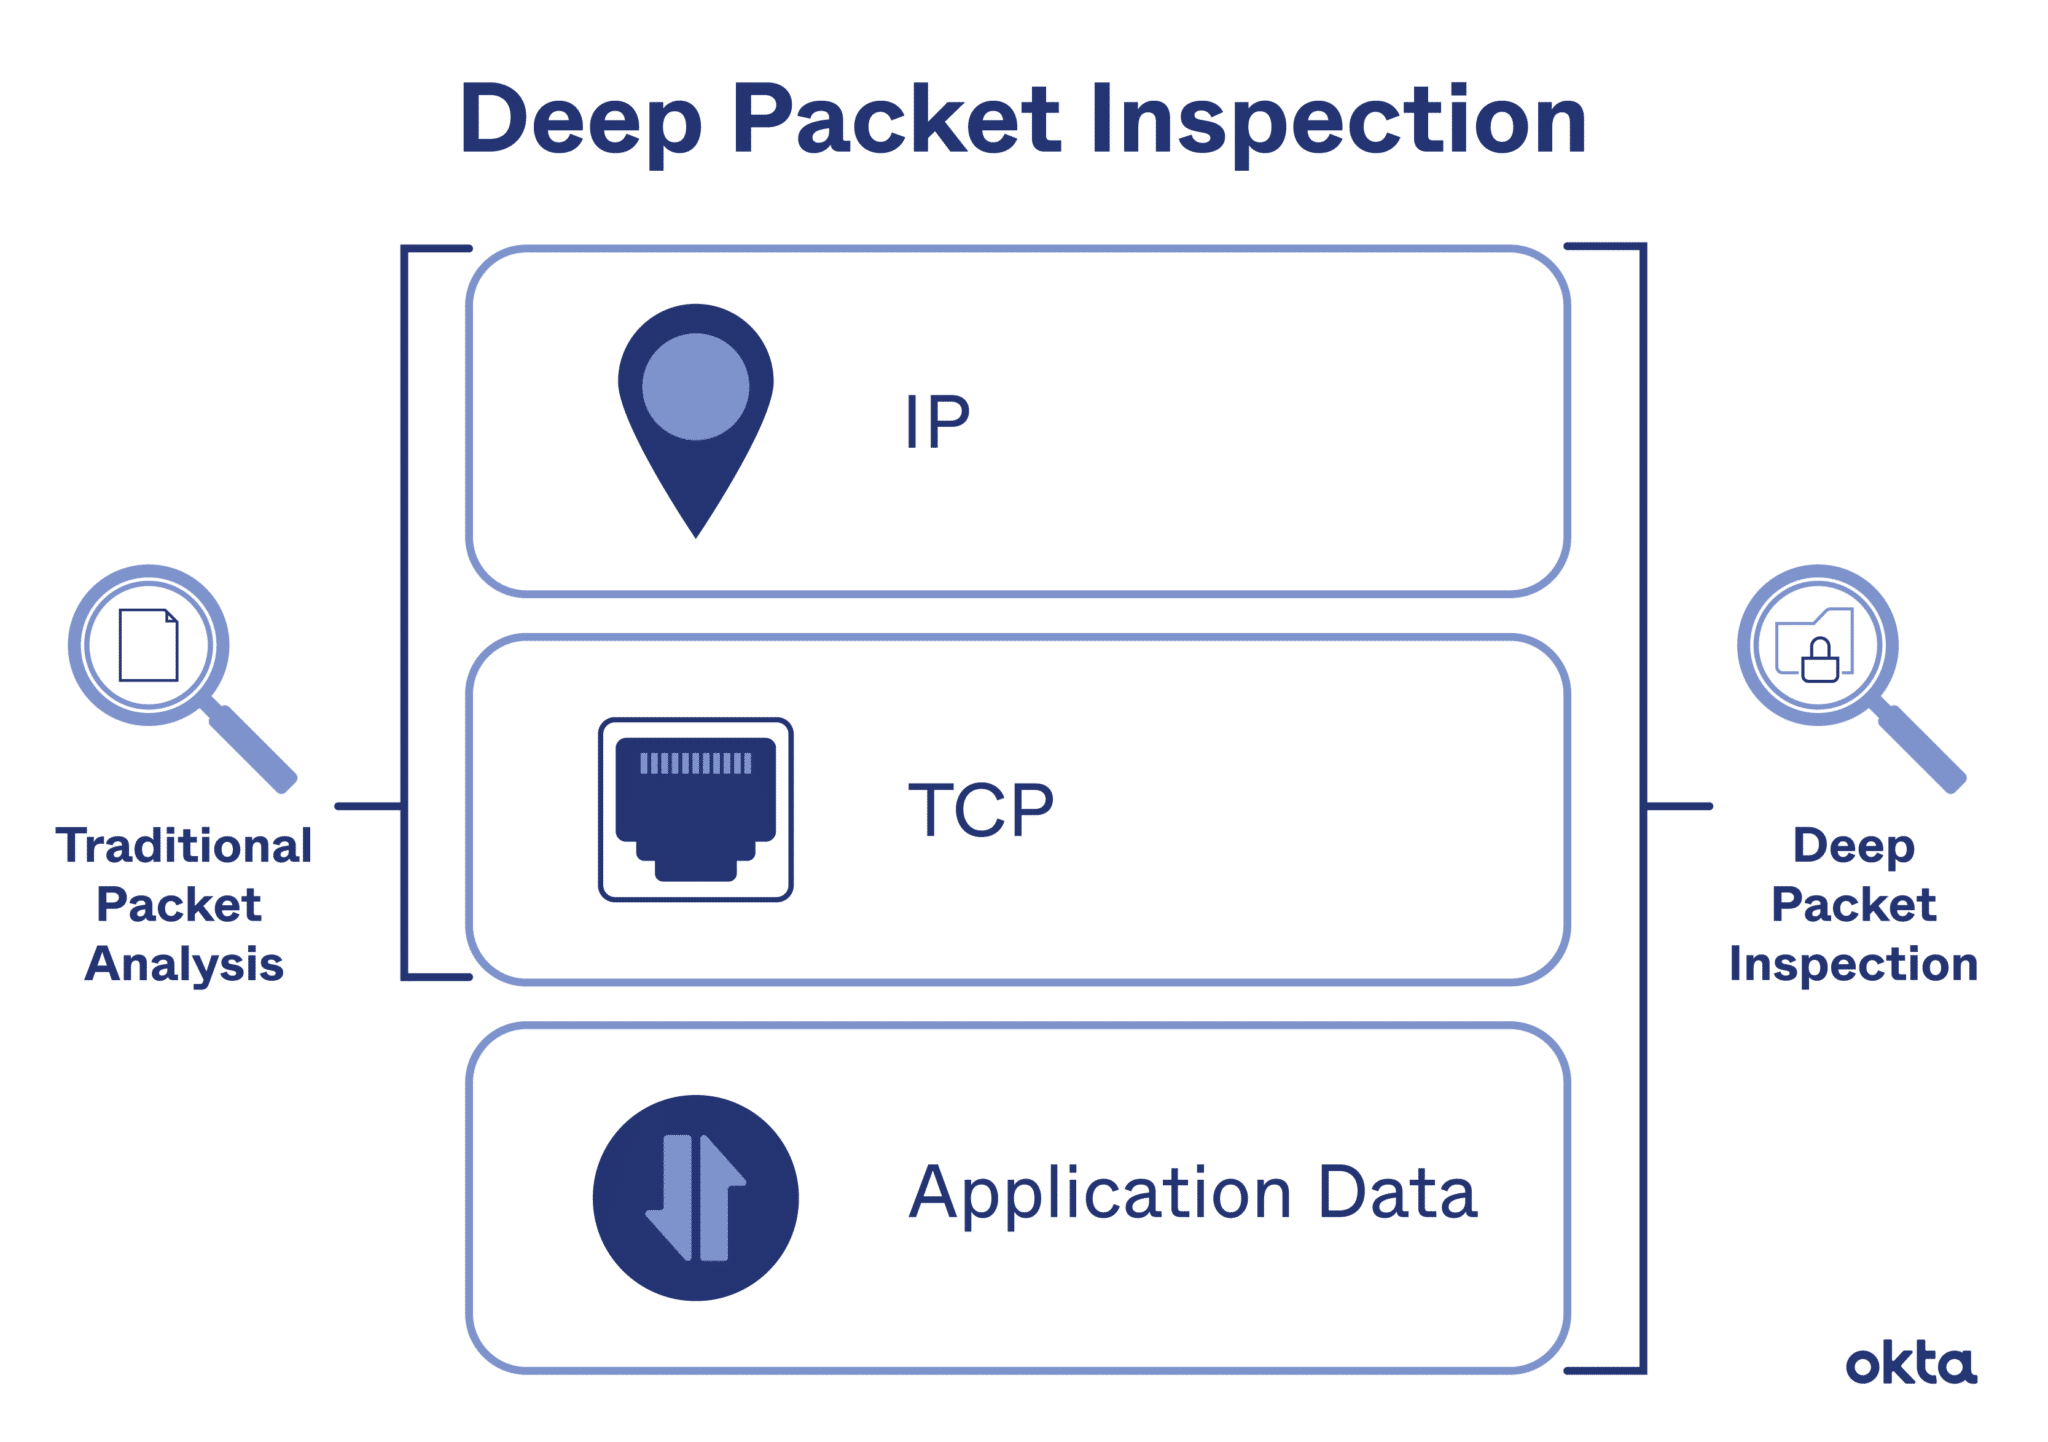 Deep Packet Inspection (DPI)